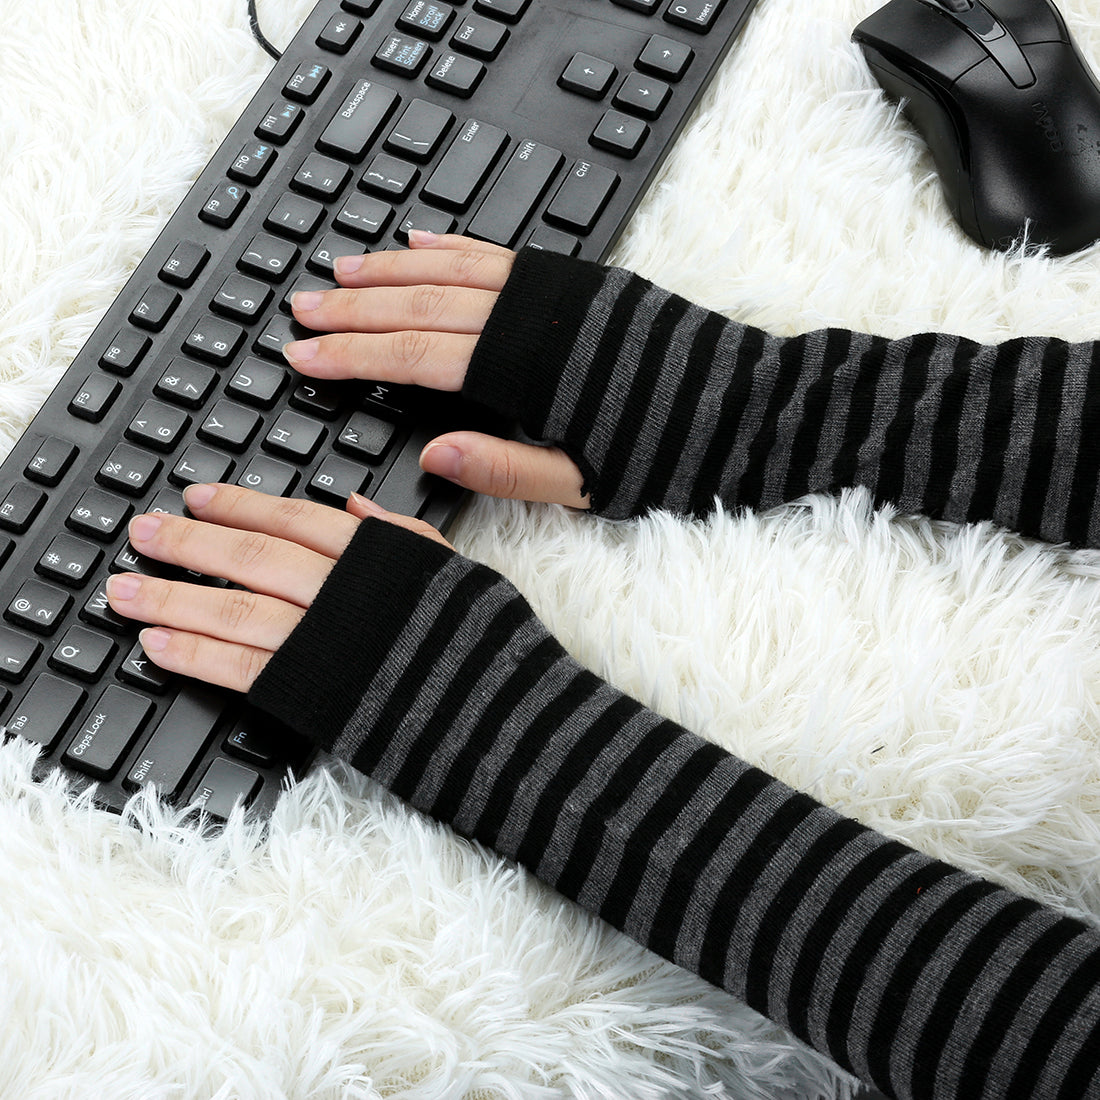 Allegra K Winter Fingerless Thumbhole Elastic Long Knitted Party Costume Gloves